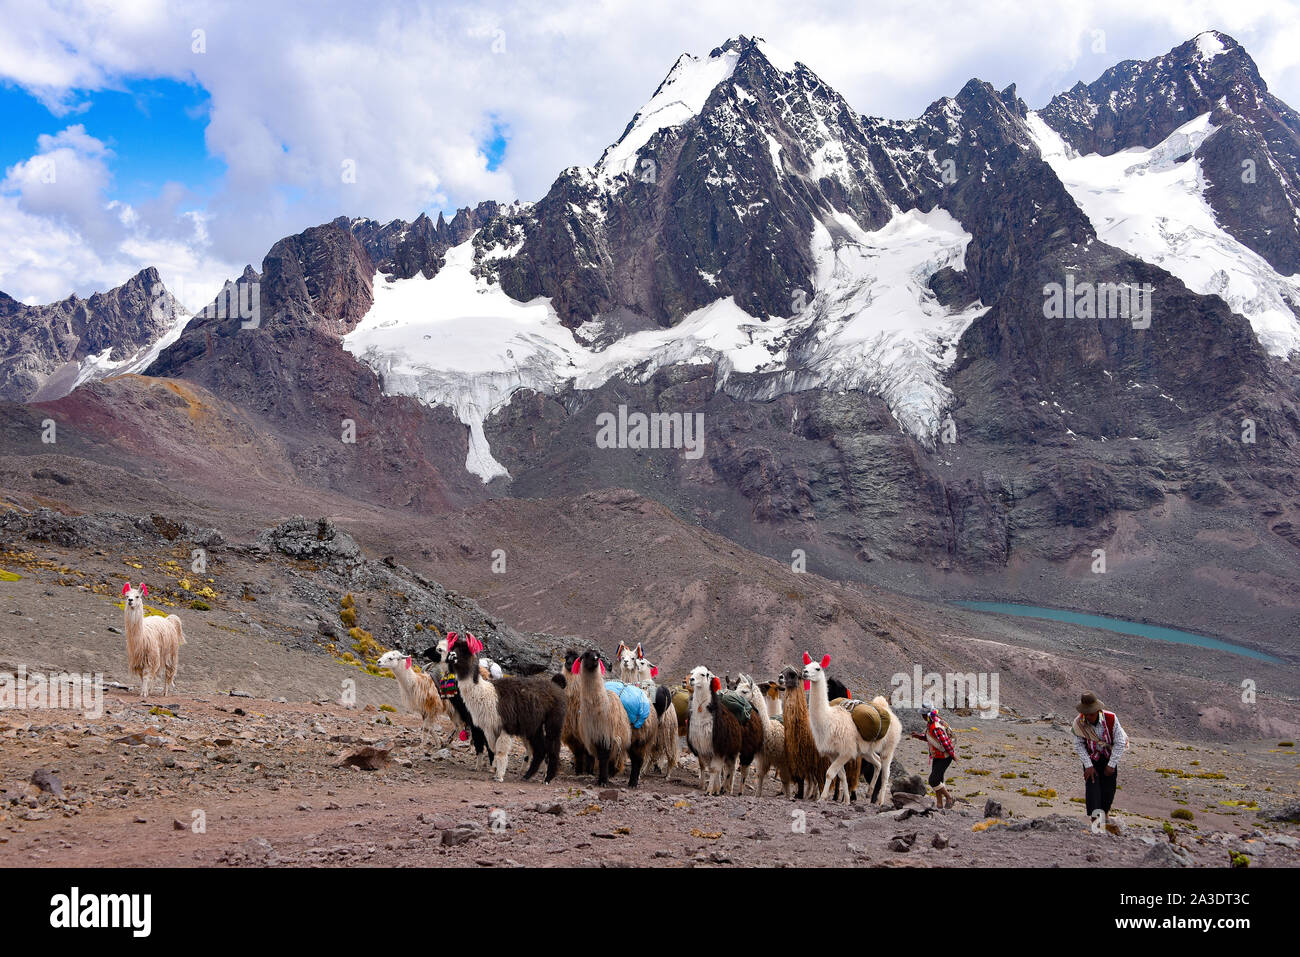 Llama pack in Cordillera Vilcanota, Ausungate, Cusco, Peru Stock Photo